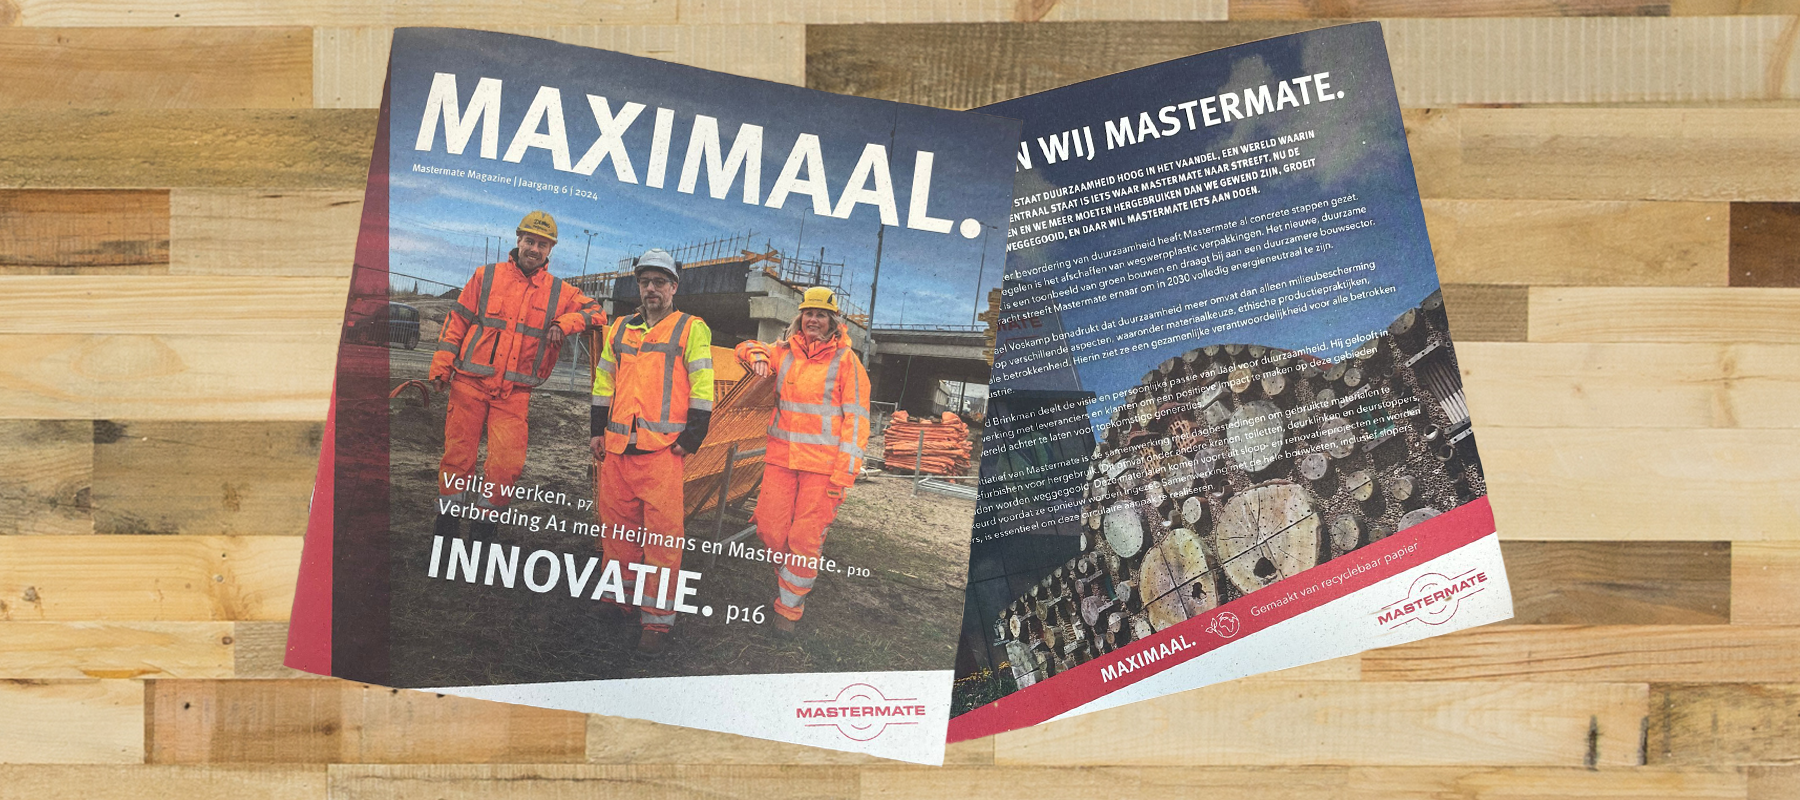 Maximaal: veilig werken, innovatie en samenwerking met Heijmans